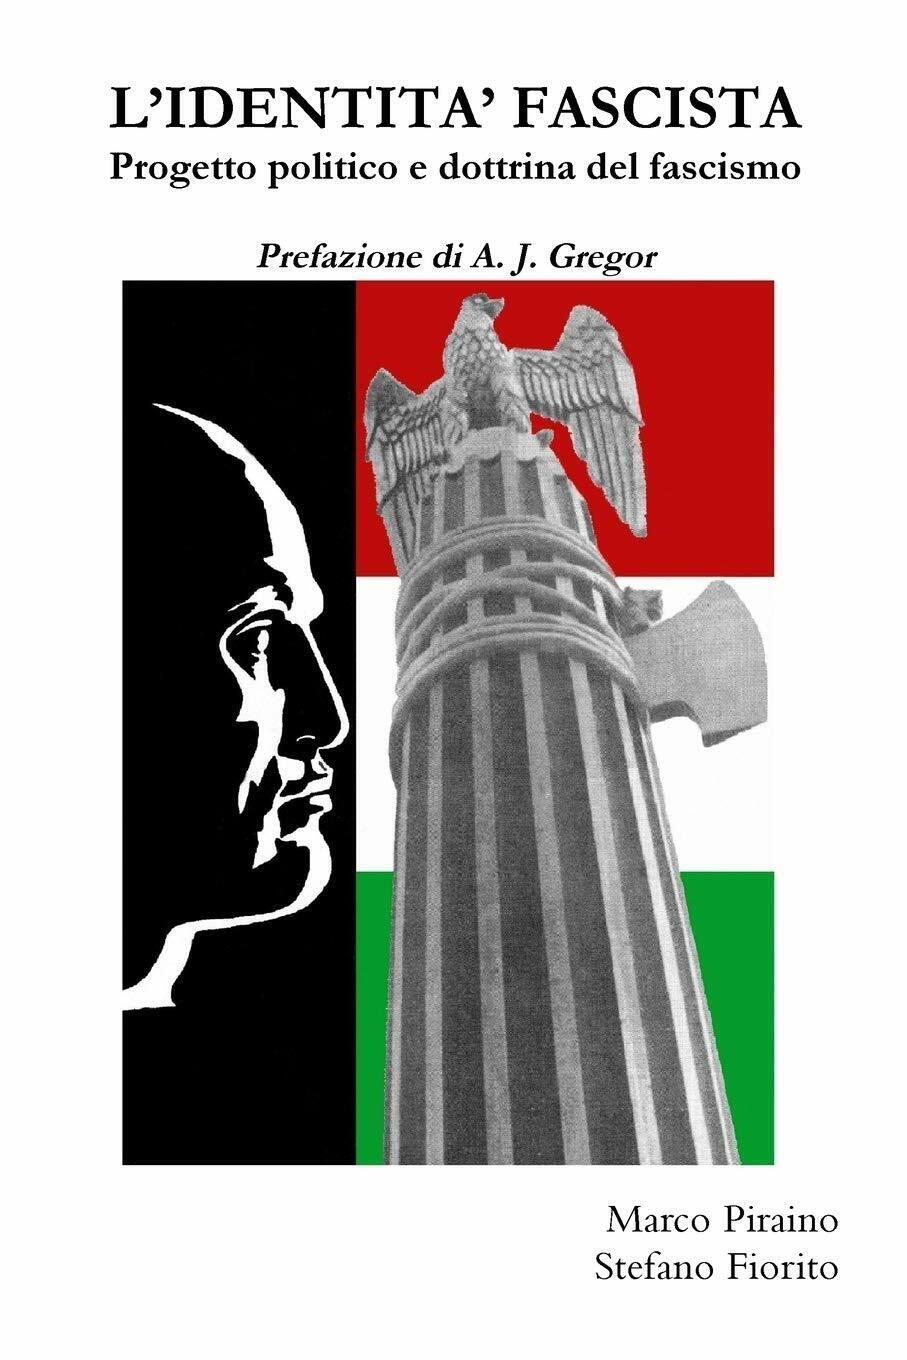 L'identita' Fascista: Progetto Politico E Dottrina Del Fascismo - Lulu.com, 2009